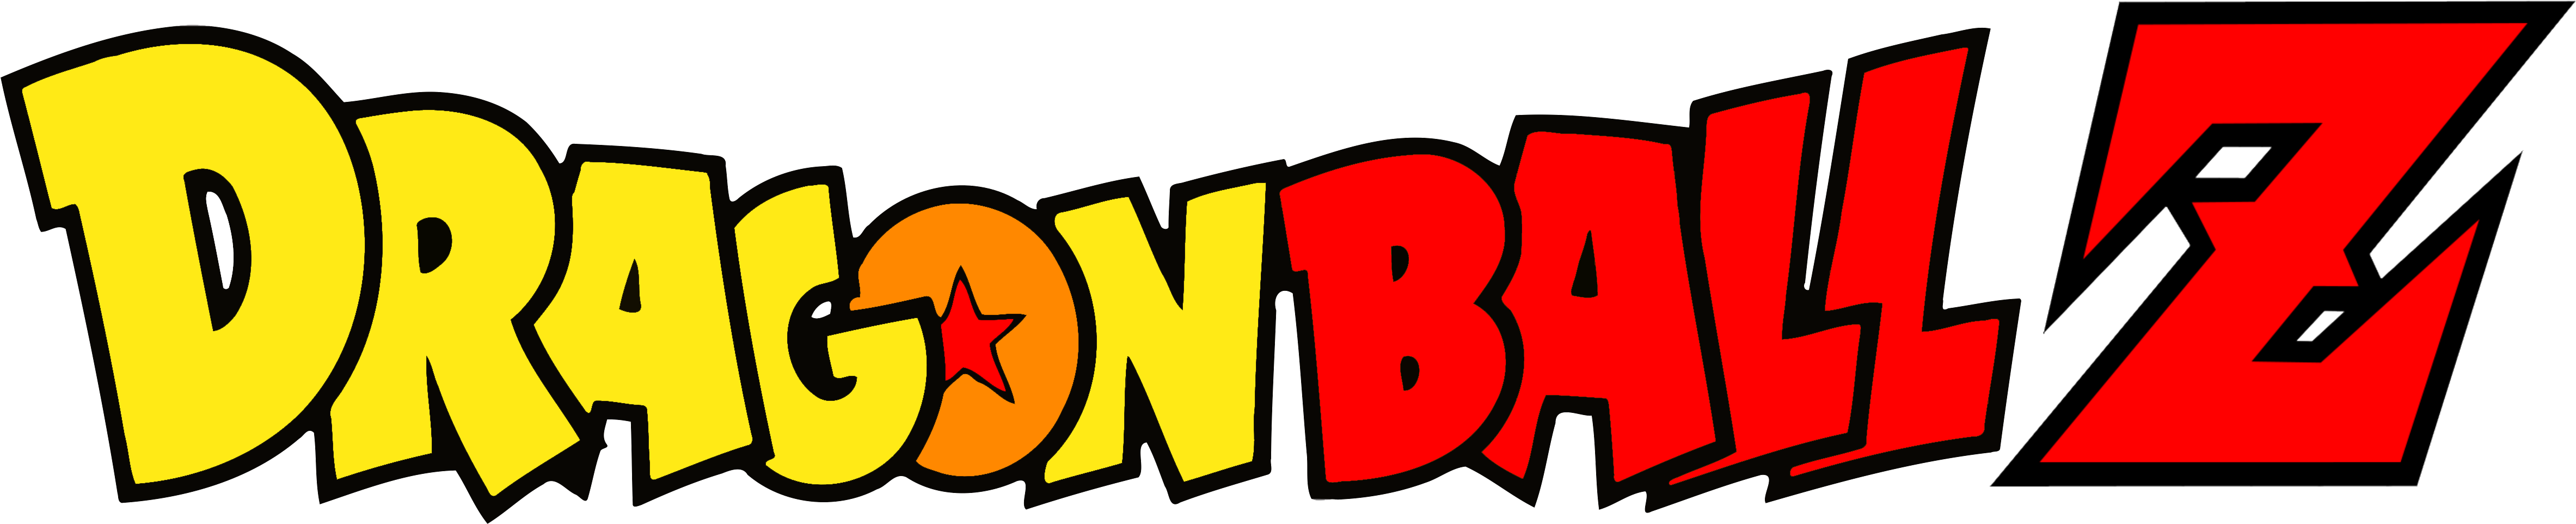 Goku Dragon Ball Z - Letras De Dragon Ball Z (4972x1272)